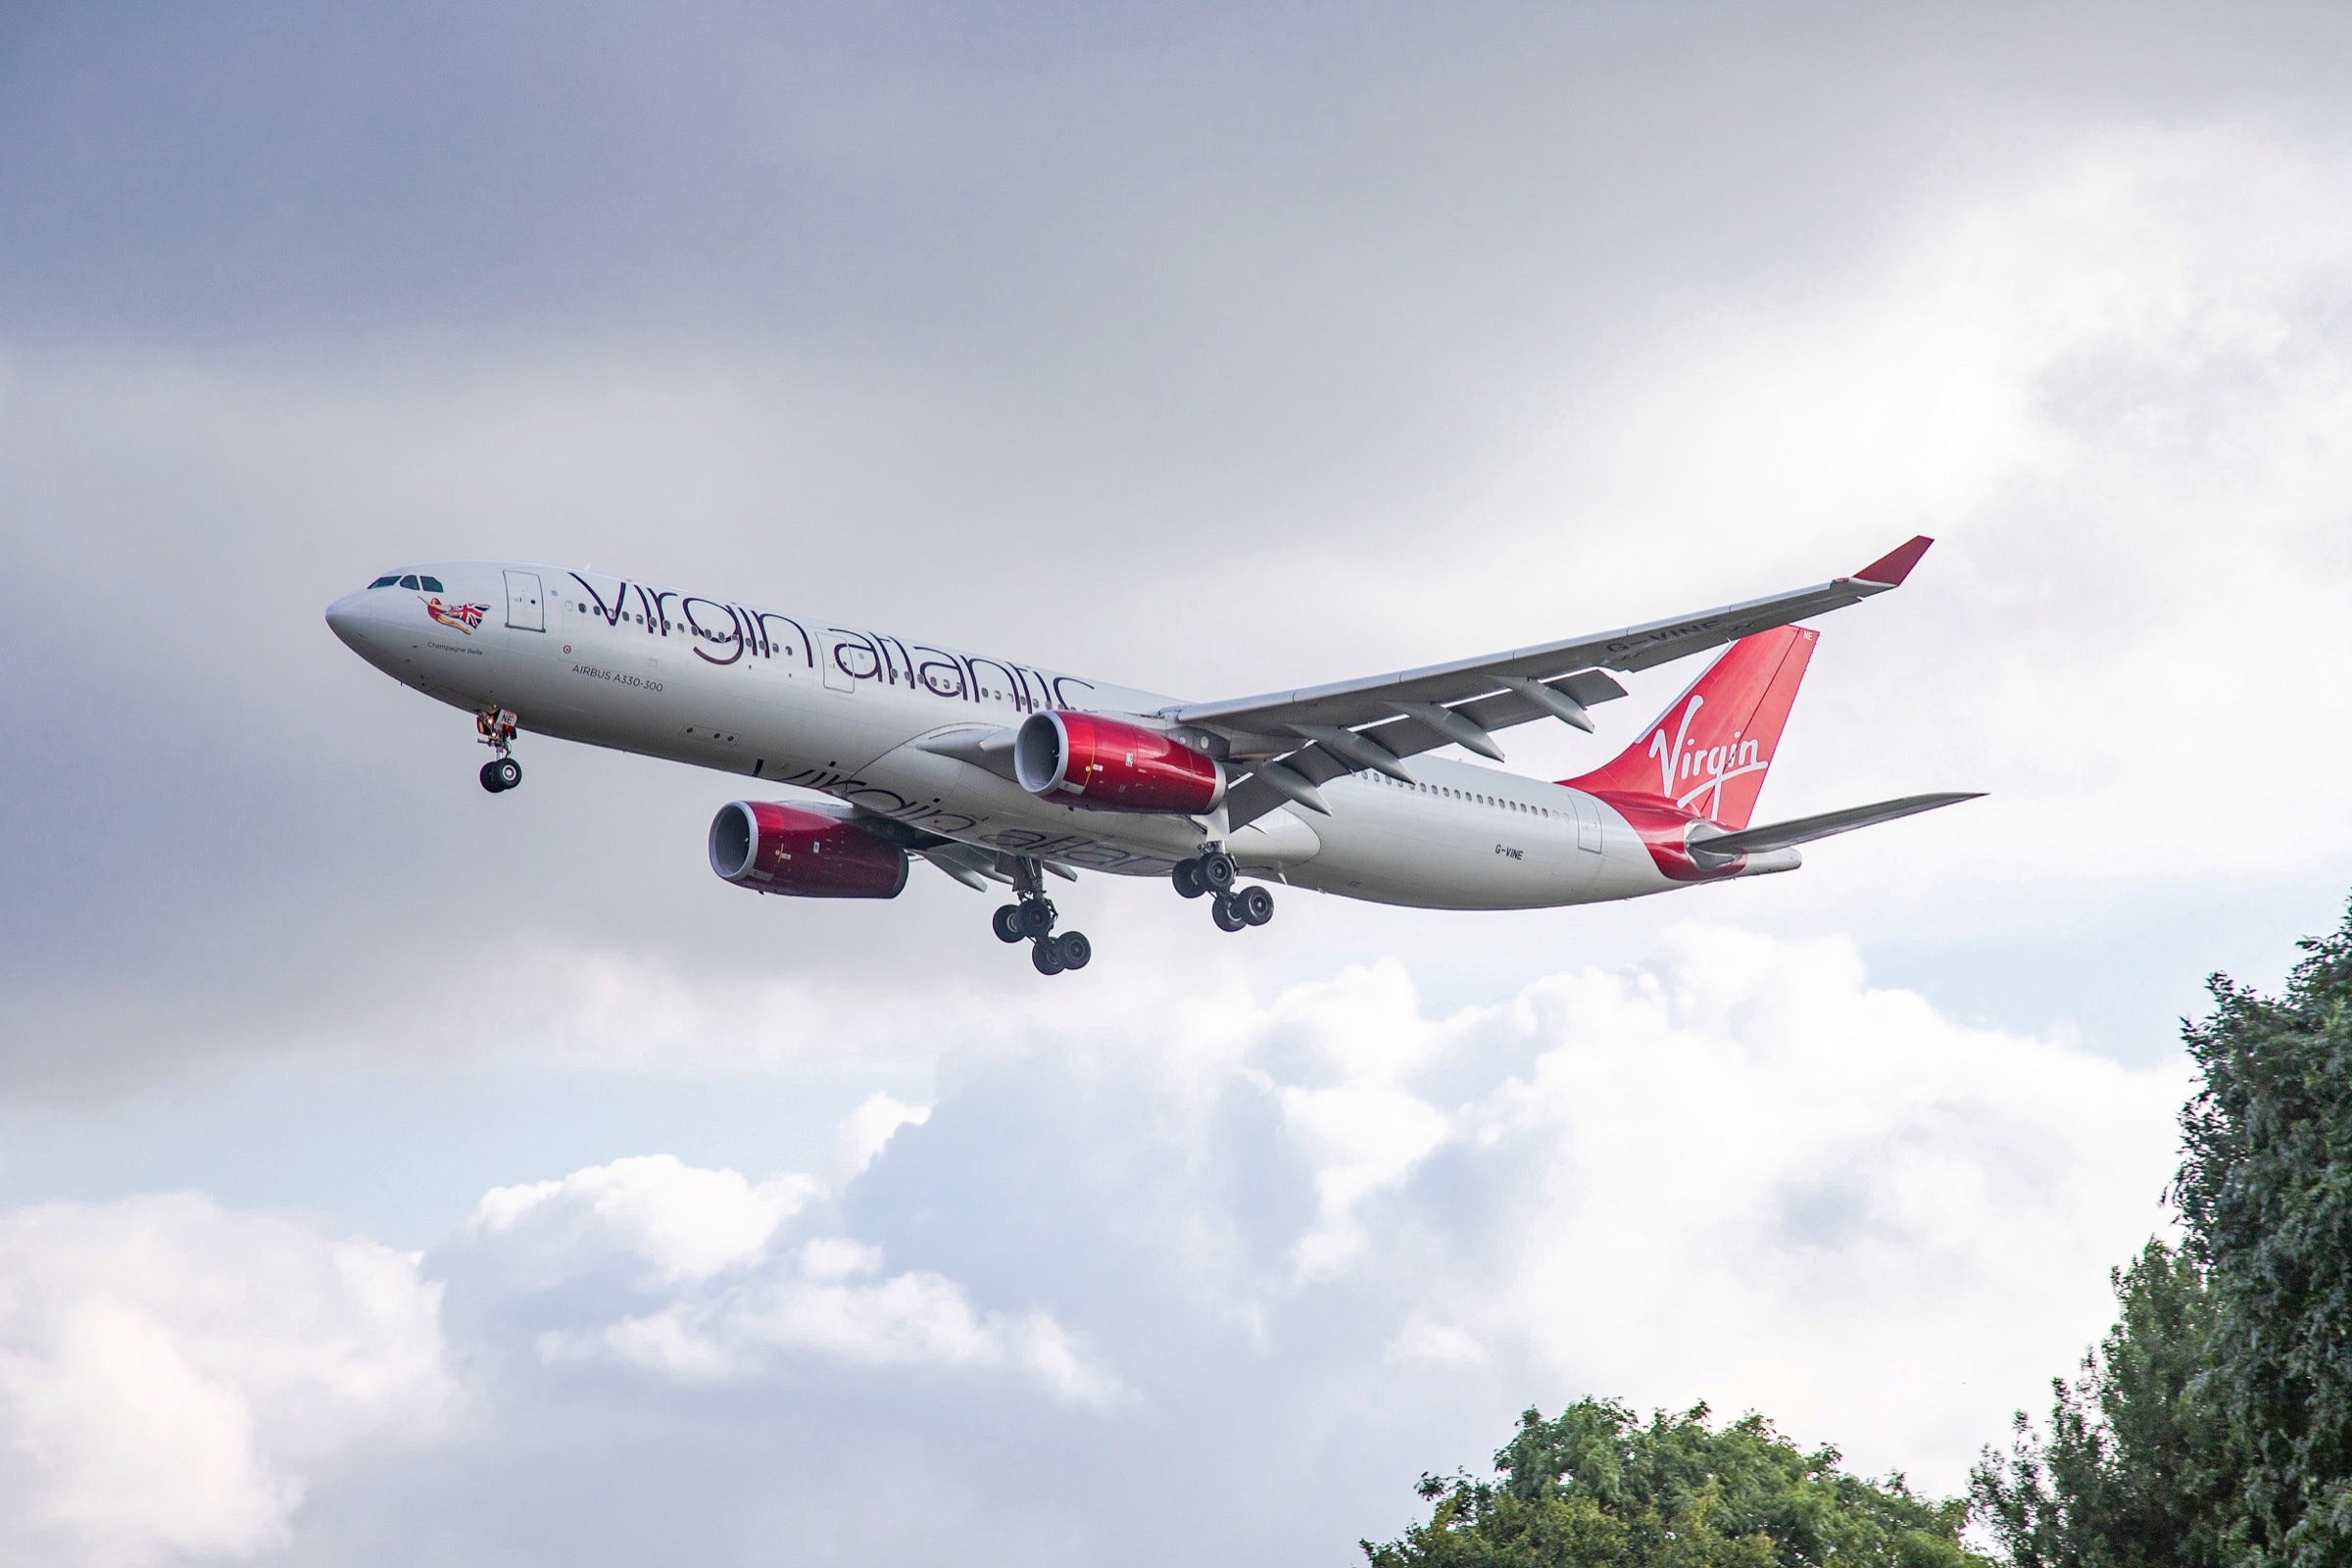 Virgin Atlantic A330-300 on final approach in London